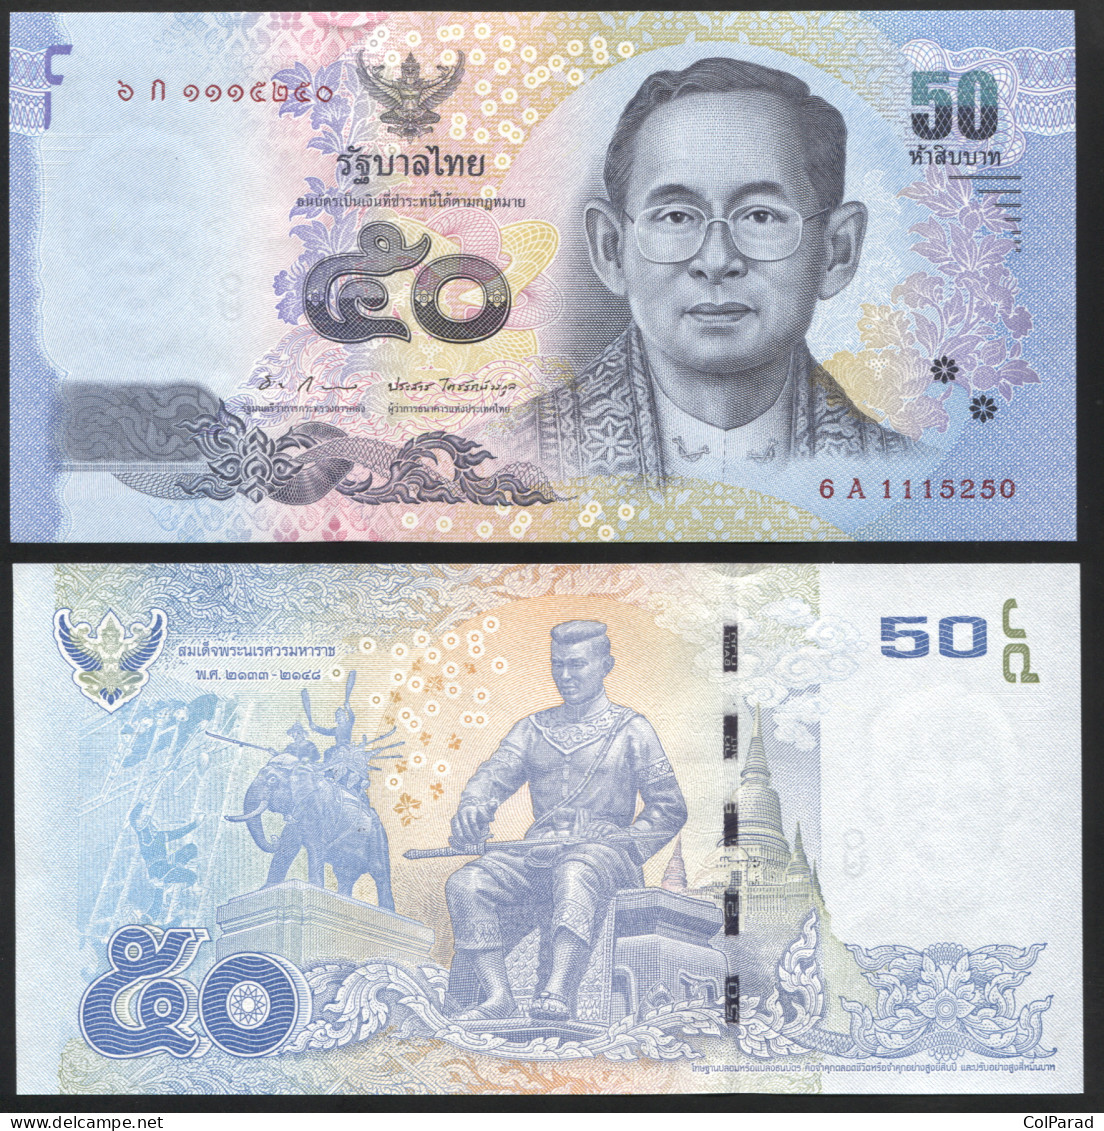 THAILAND 50 BAHT - ND (2012) - Unc - P.119 Paper Banknote - Thaïlande